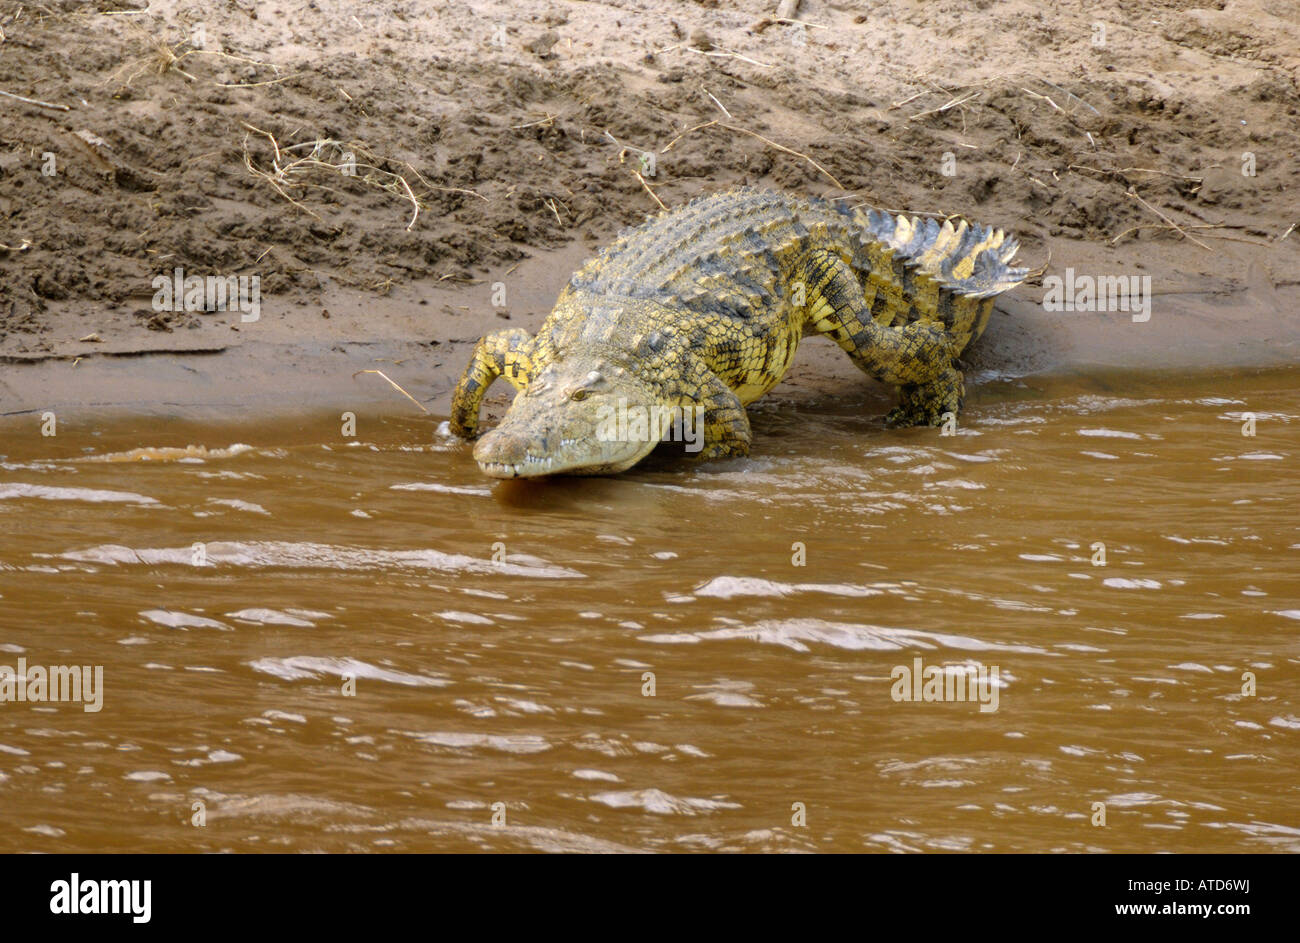 Un crocodile se jette dans le fleuve, rivière Mara, Masai Mara, Kenya Banque D'Images